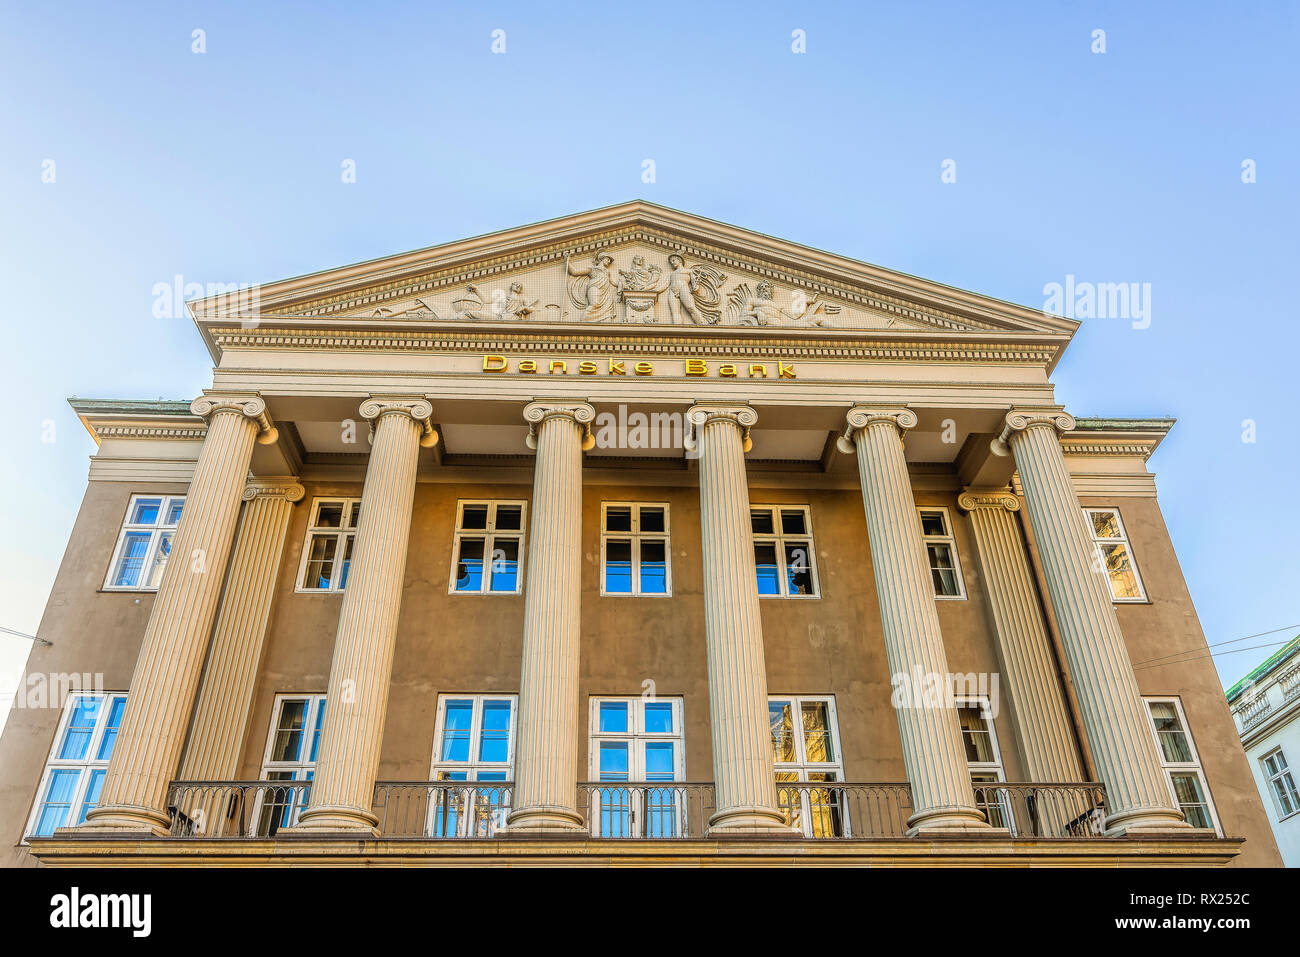 Die Fassade der Geldwäsche dänische Bank mit ionischen Säulen und einer sclprured Giebel, Kopenhagen, 16. Februar 2019 Stockfoto